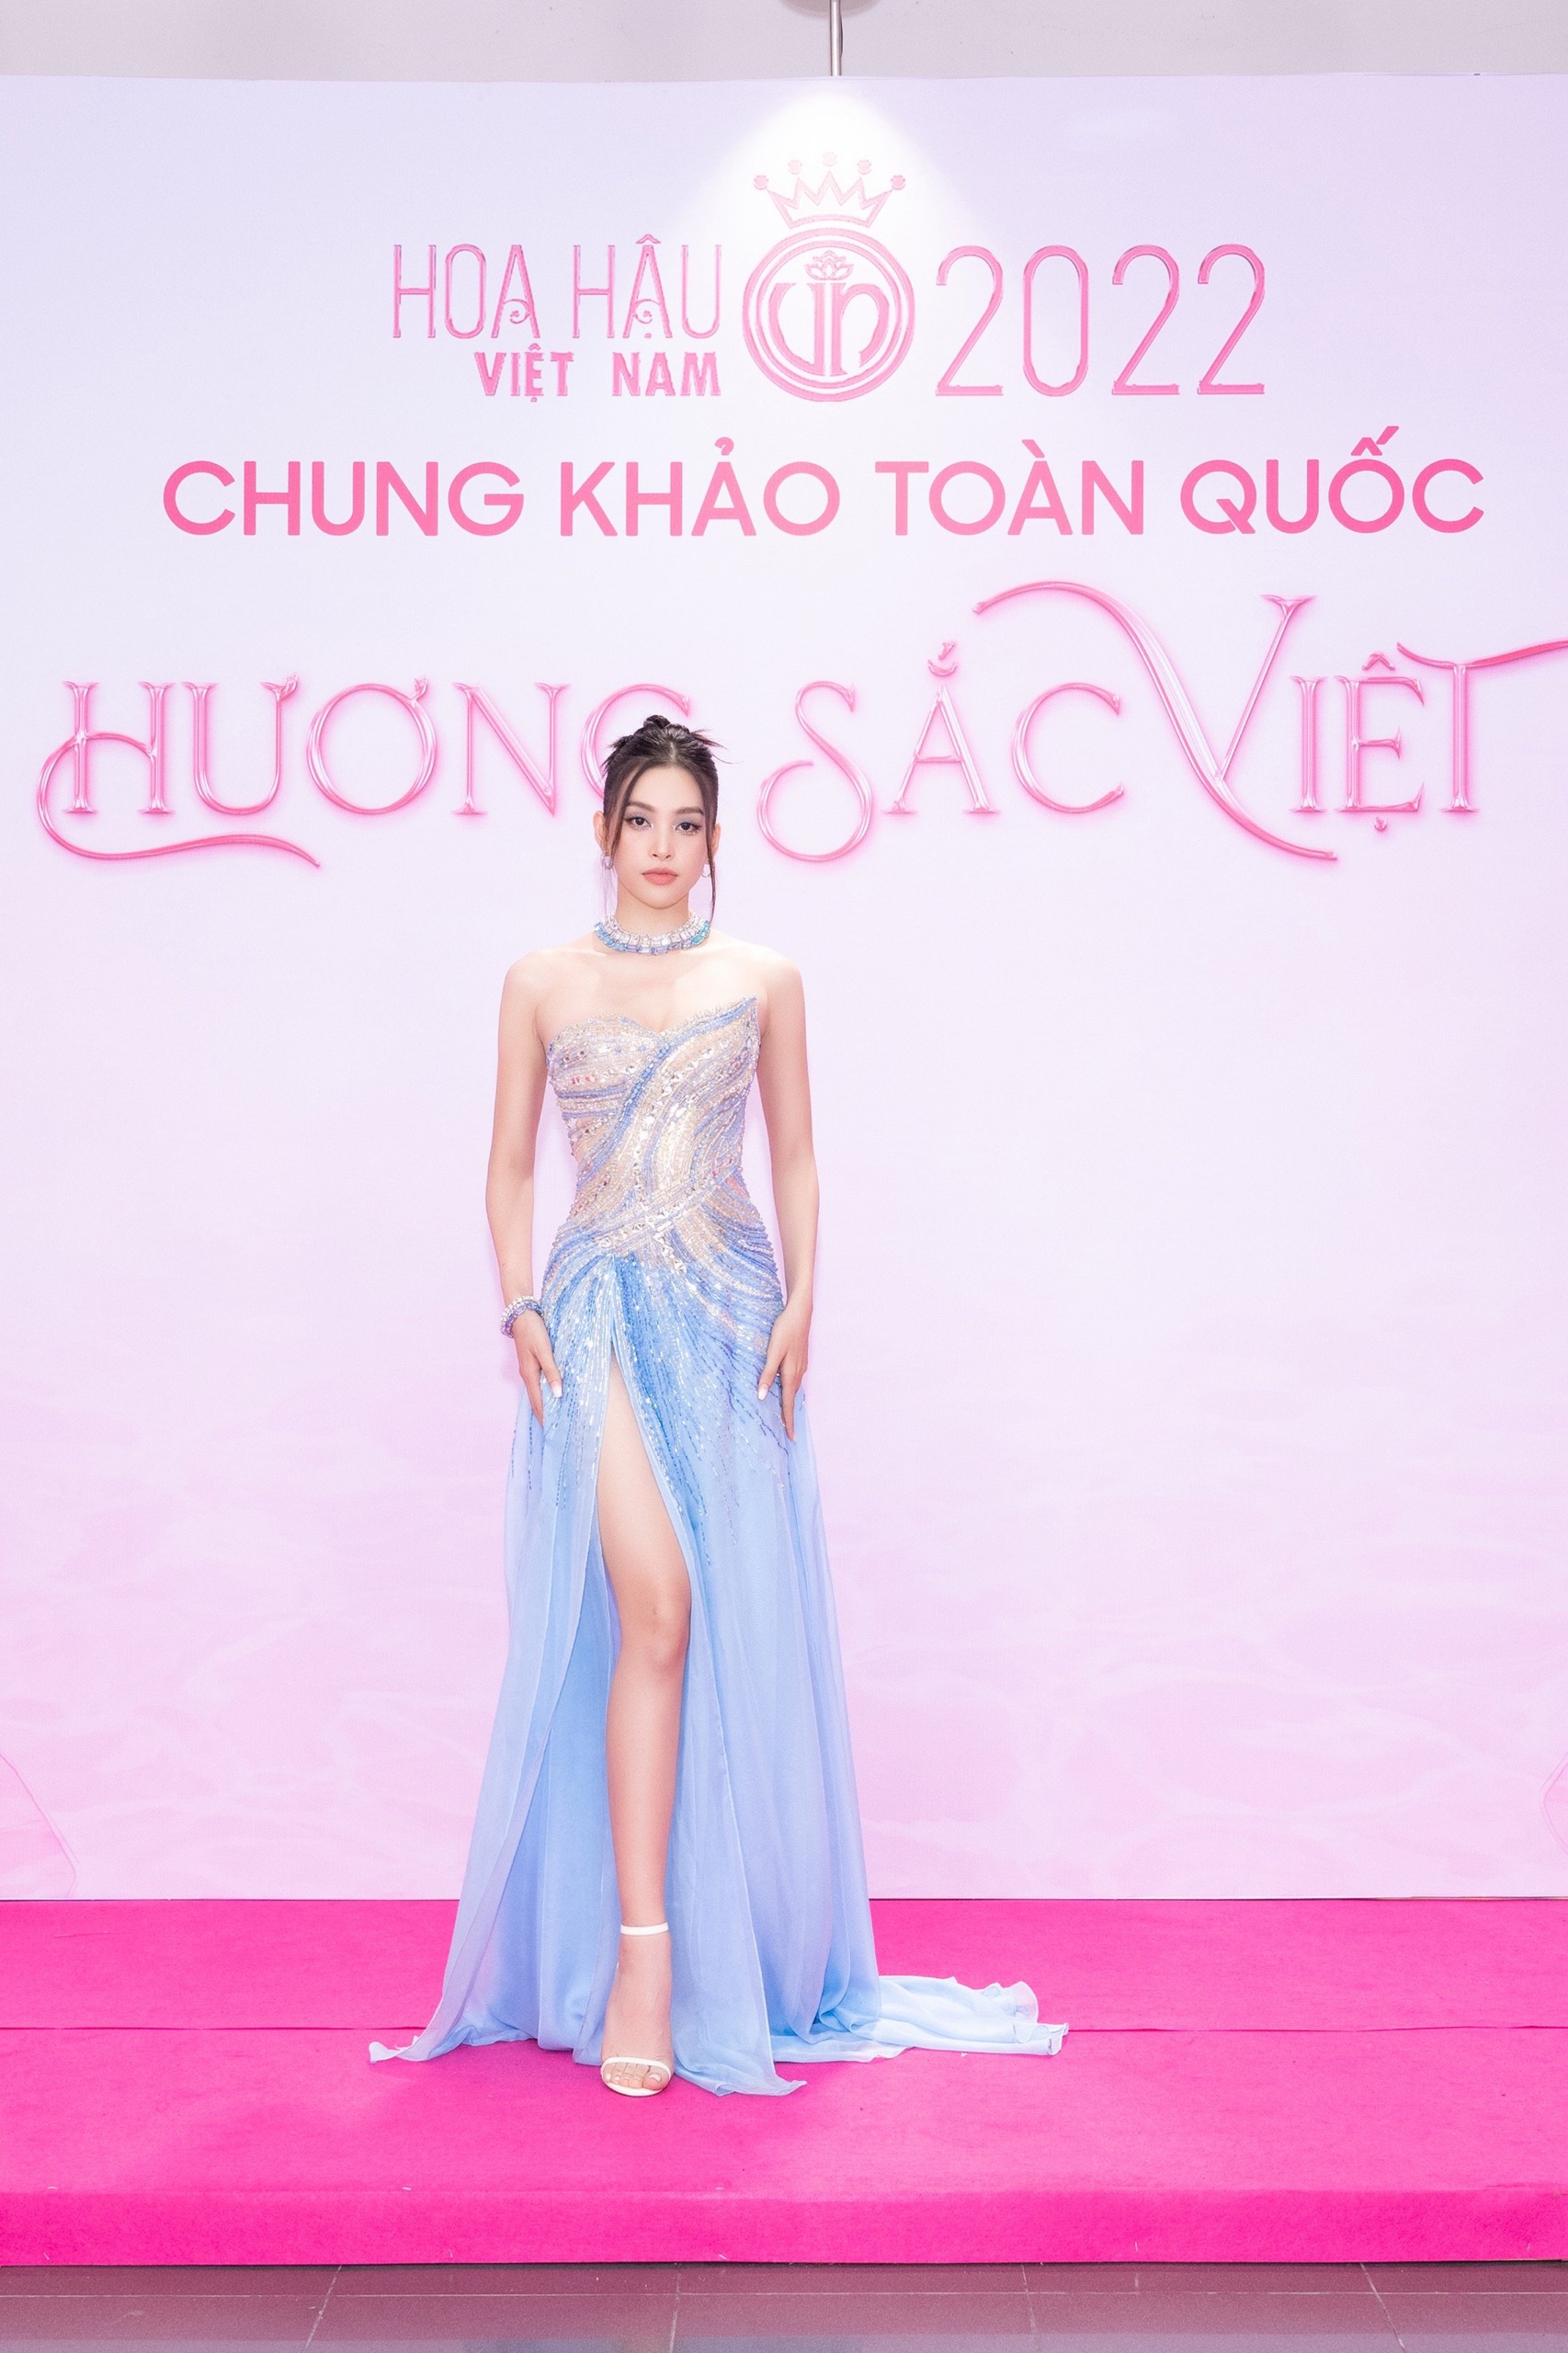 Thảm đỏ Chung khảo Hoa hậu Việt Nam 2022: Đỗ Hà - Bảo Ngọc đọ chân dài, Thuỳ Tiên xinh như nữ thần - Ảnh 7.